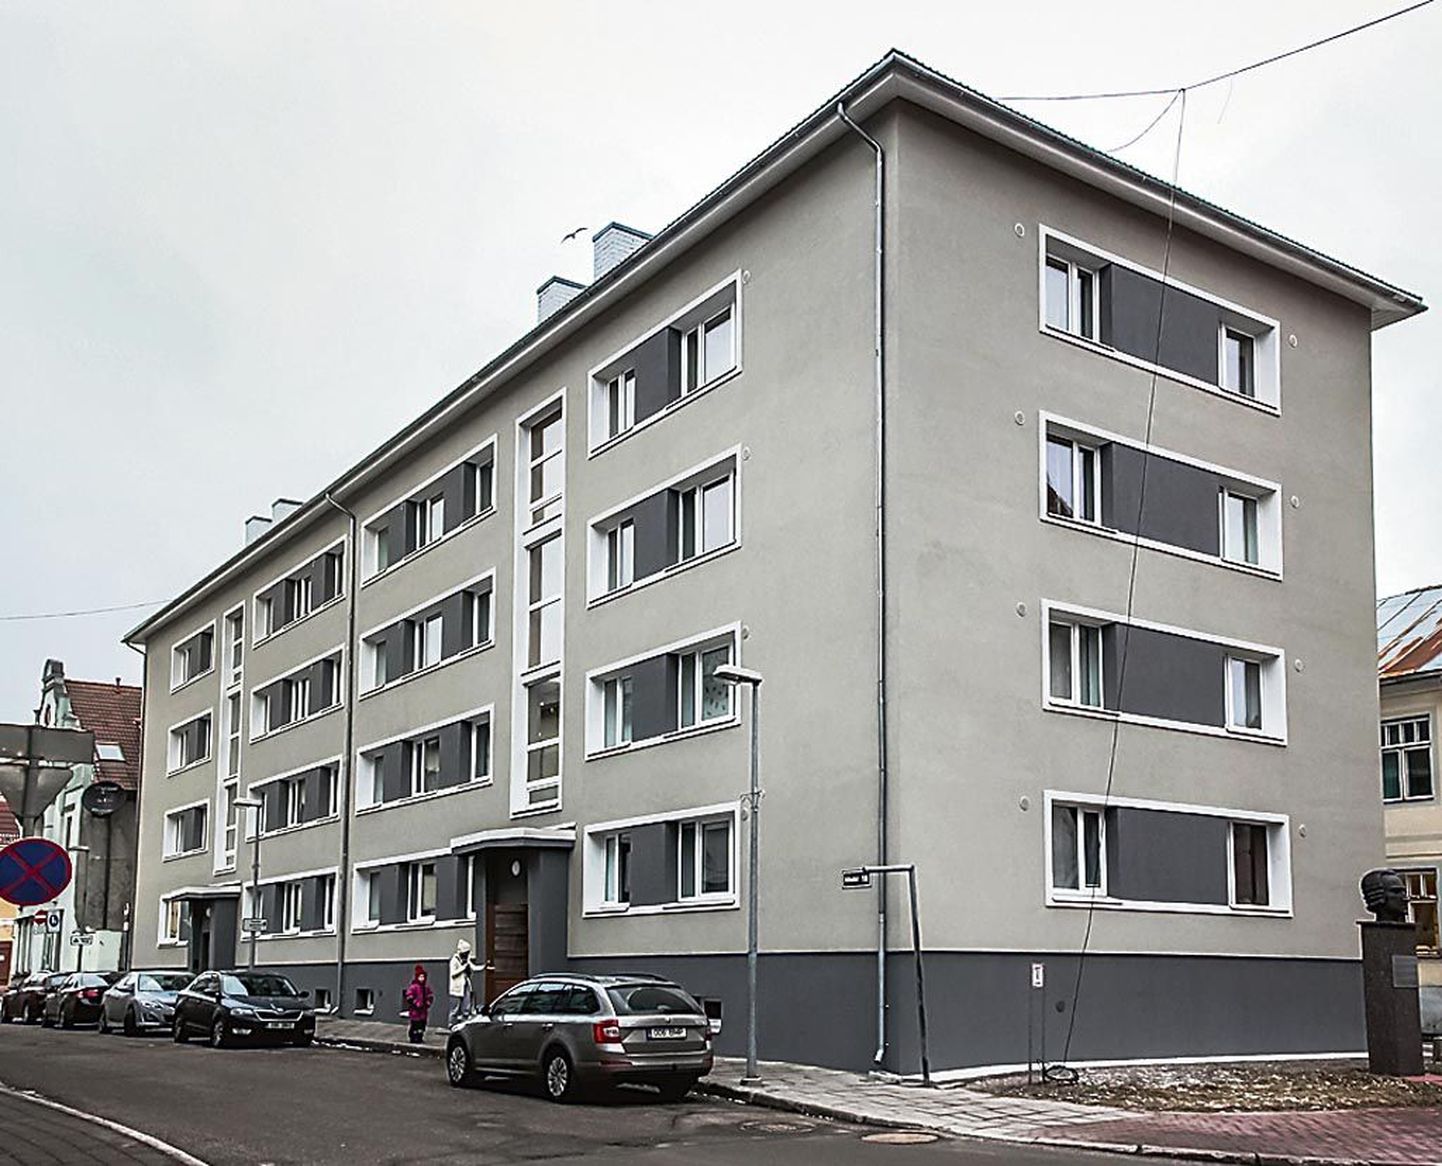 Pärnus Nikolai 18 asuva kortermaja renoveerimine kestis üle kivide ja kändude kaks ja pool aastat, sest üks elanik hakkas uuendamisele vastu töötama.